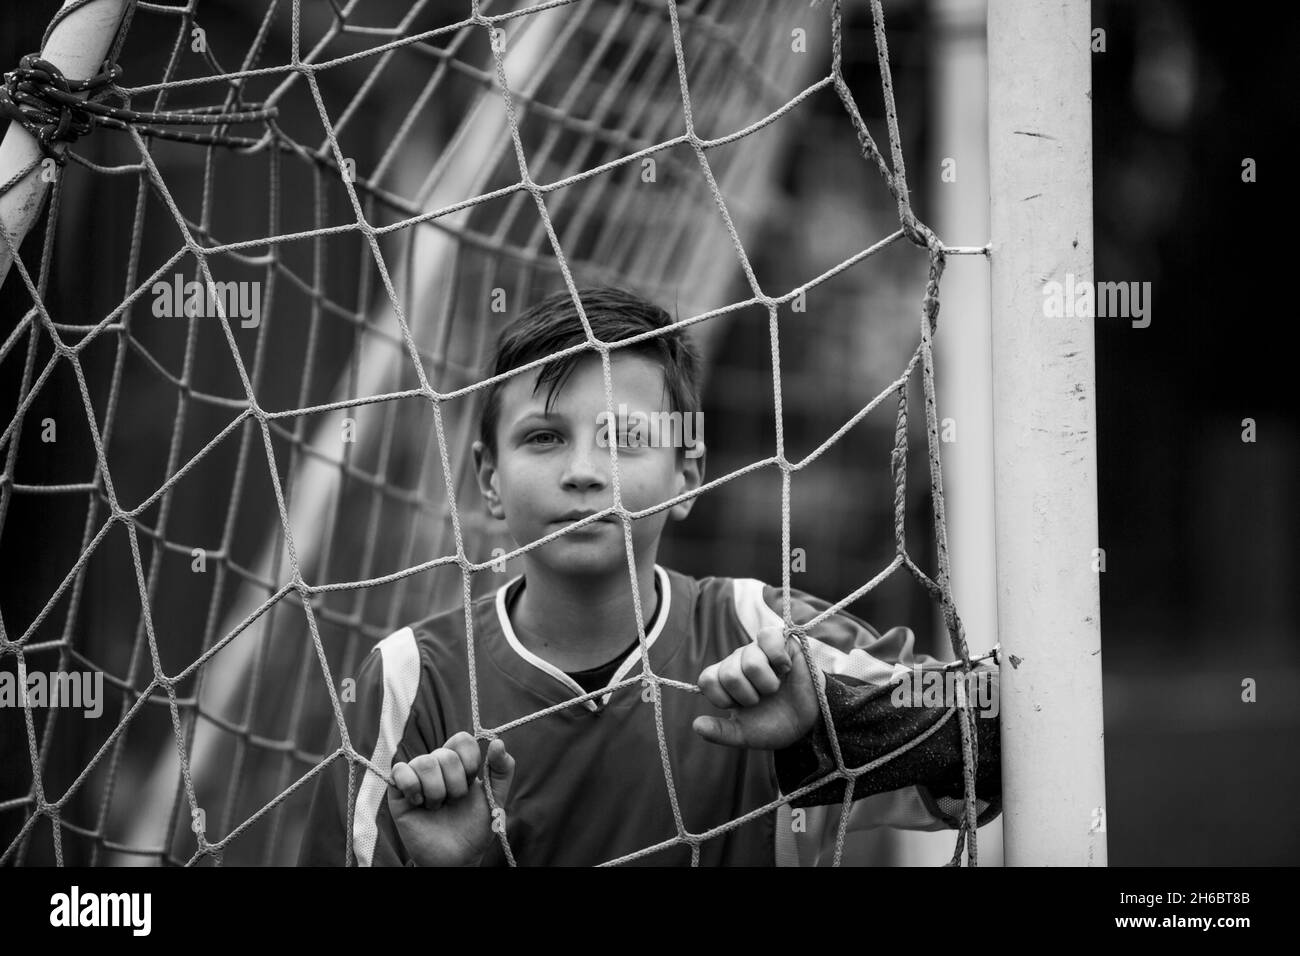 Un portrait de jeune garçon près de la porte sur le terrain de football.Photo en noir et blanc. Banque D'Images